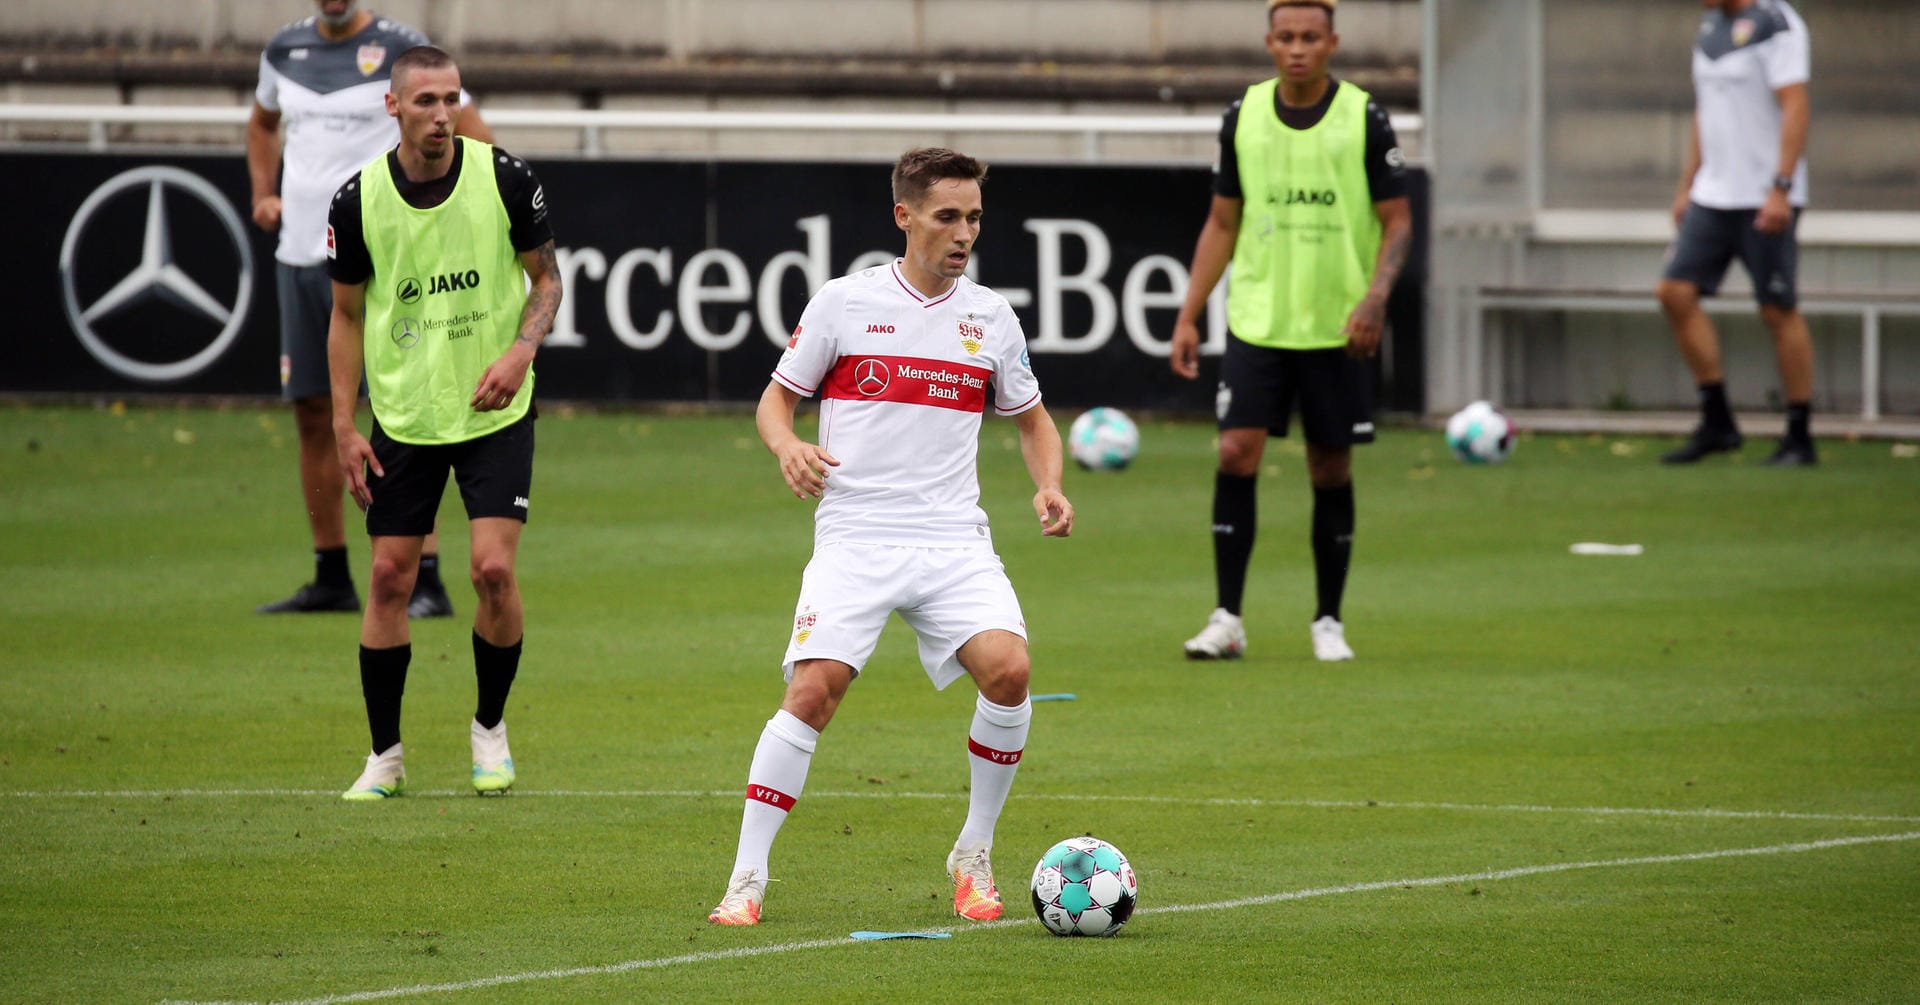 VfB Stuttgart: Philipp Klement und die Profis freuen sich auf die Rückkehr in die Bundesliga. Der VfB befindet sich wegen der Ausarbeitung eines entsprechenden Konzepts in Kontakt mit den regionalen Behörden. Solange dieses nicht fertig oder abgesegnet ist, will der Klub keine Auskunft geben.